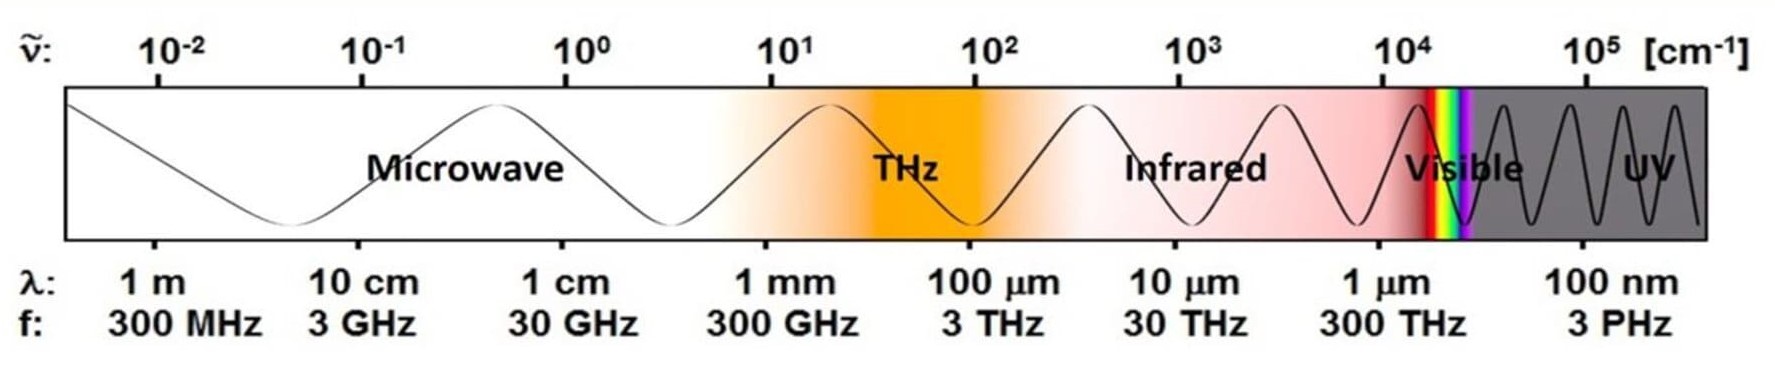 Terahertz Time-Domain Spectroscopy